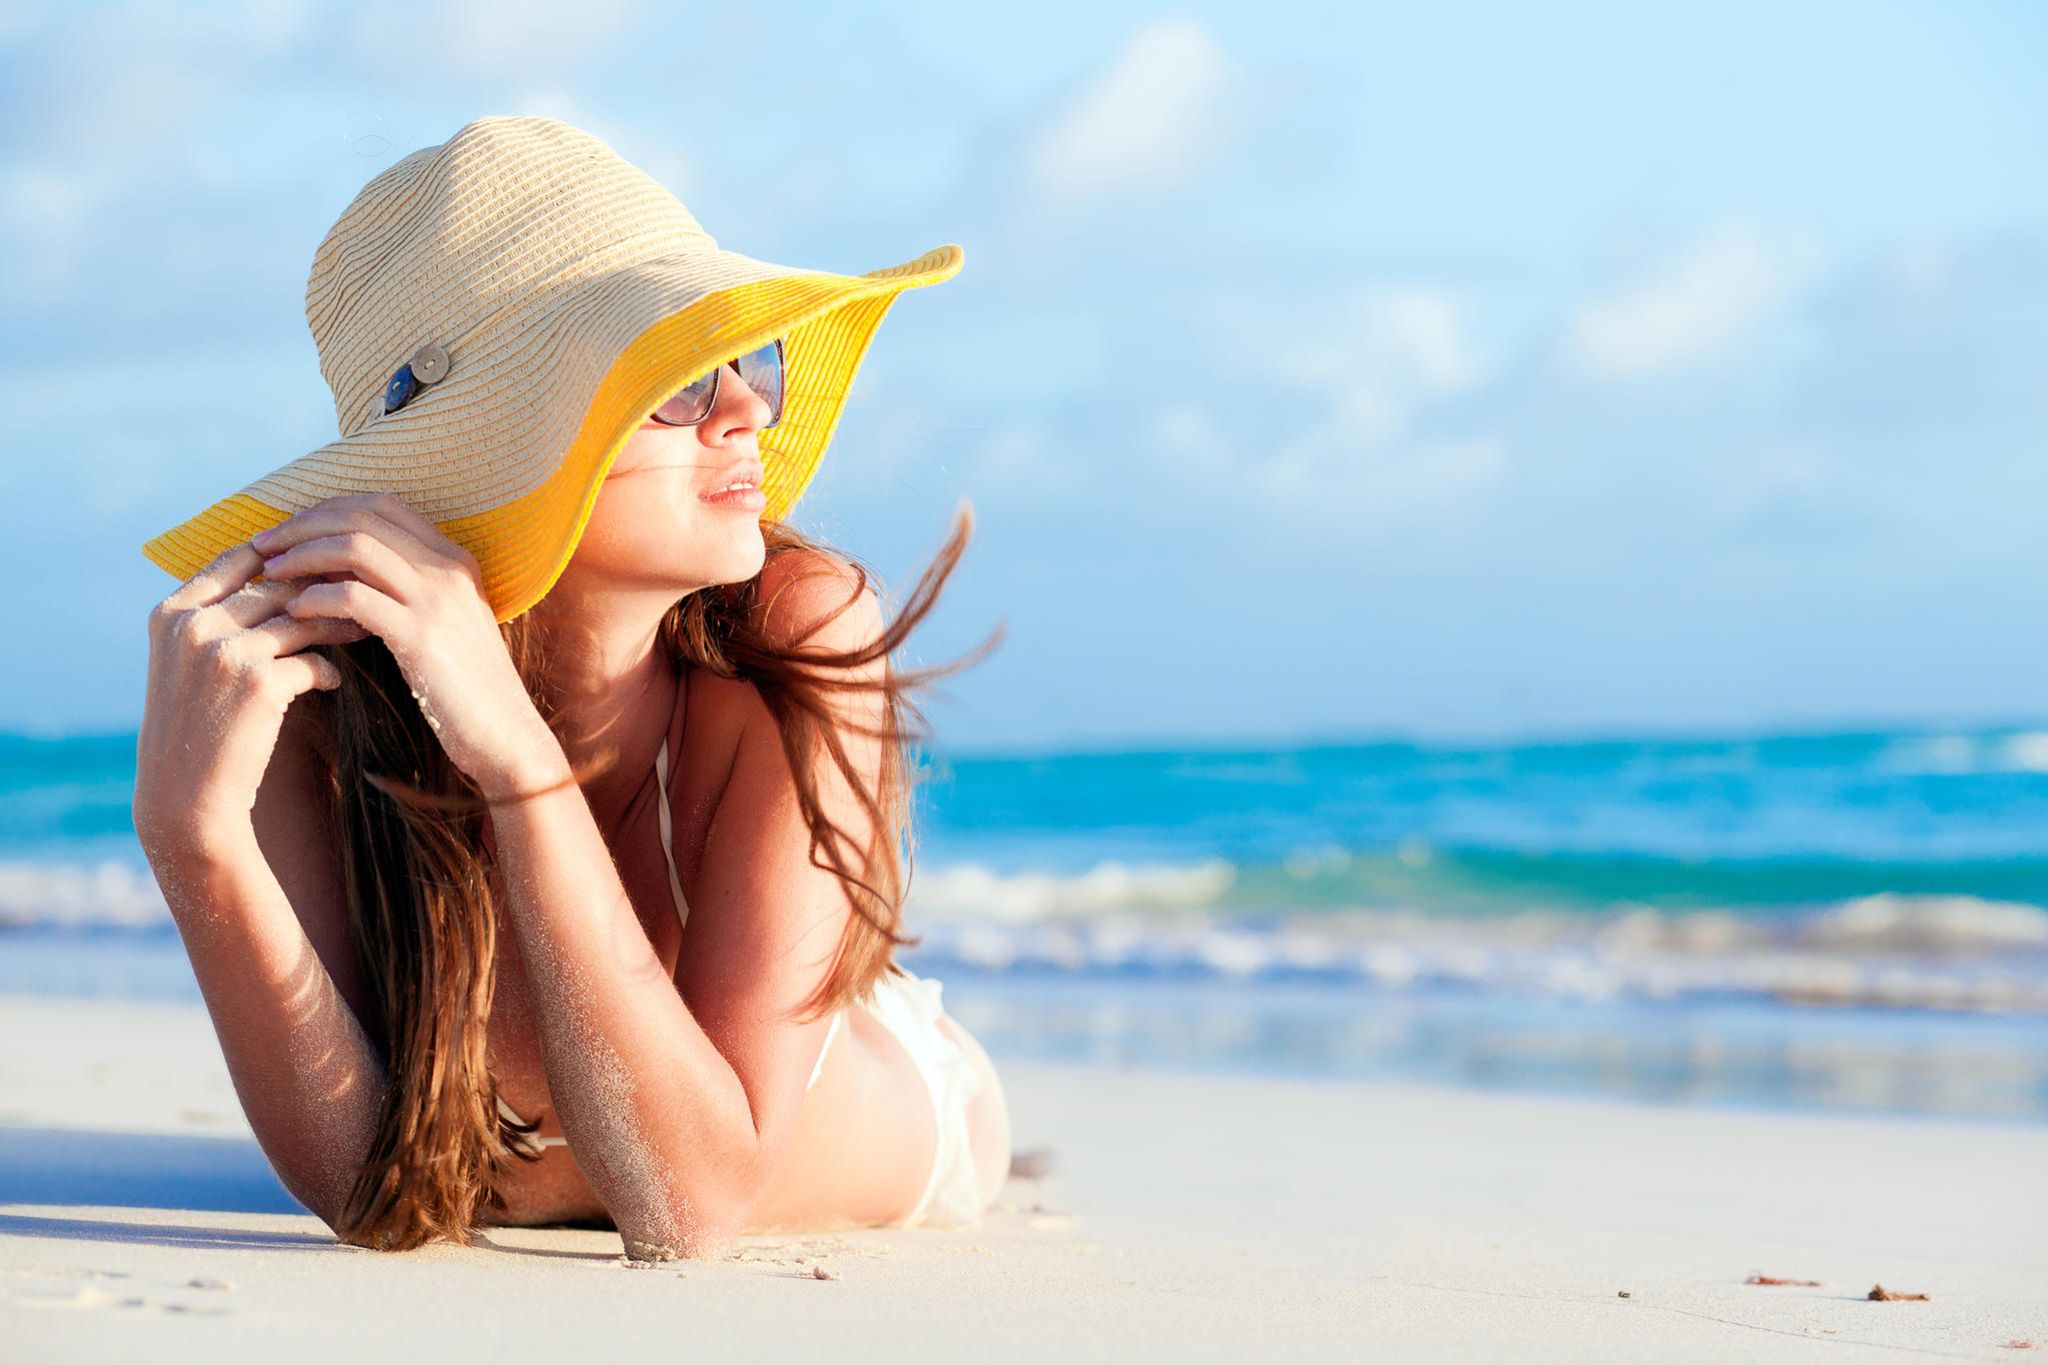 Шляпа на пляже. Девушка в шляпе на пляже. Загорелая девушка в шляпе. Шляпа для пляжа. Девушка в шляпке на пляже.